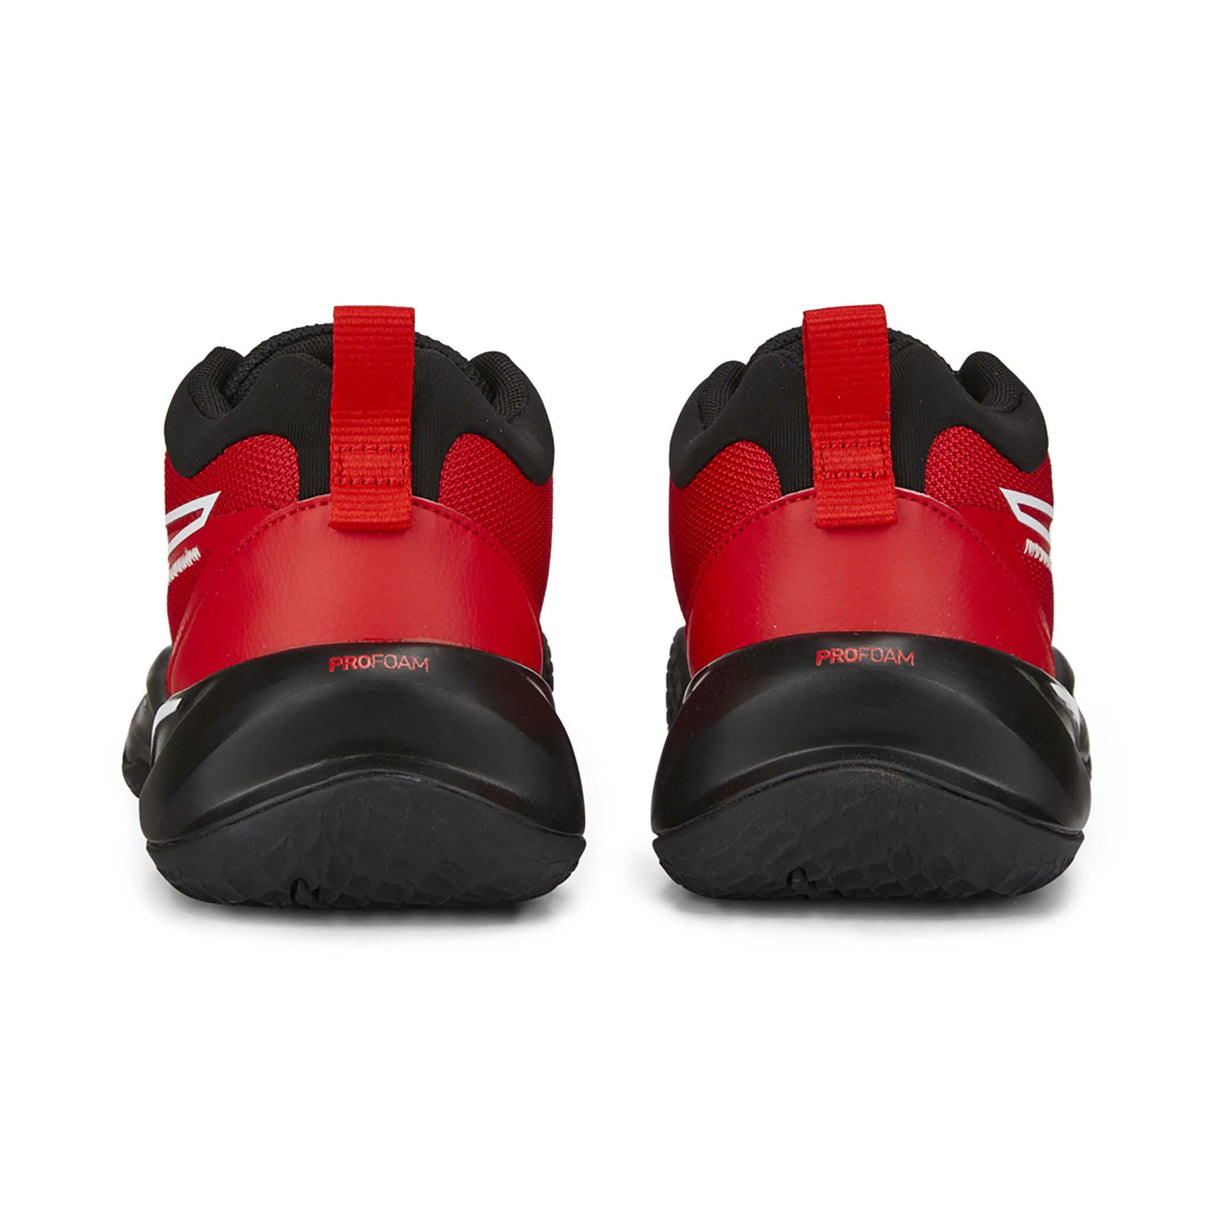 Puma Playmaker Pro chaussures de basketball enfant talons- rouge / noir